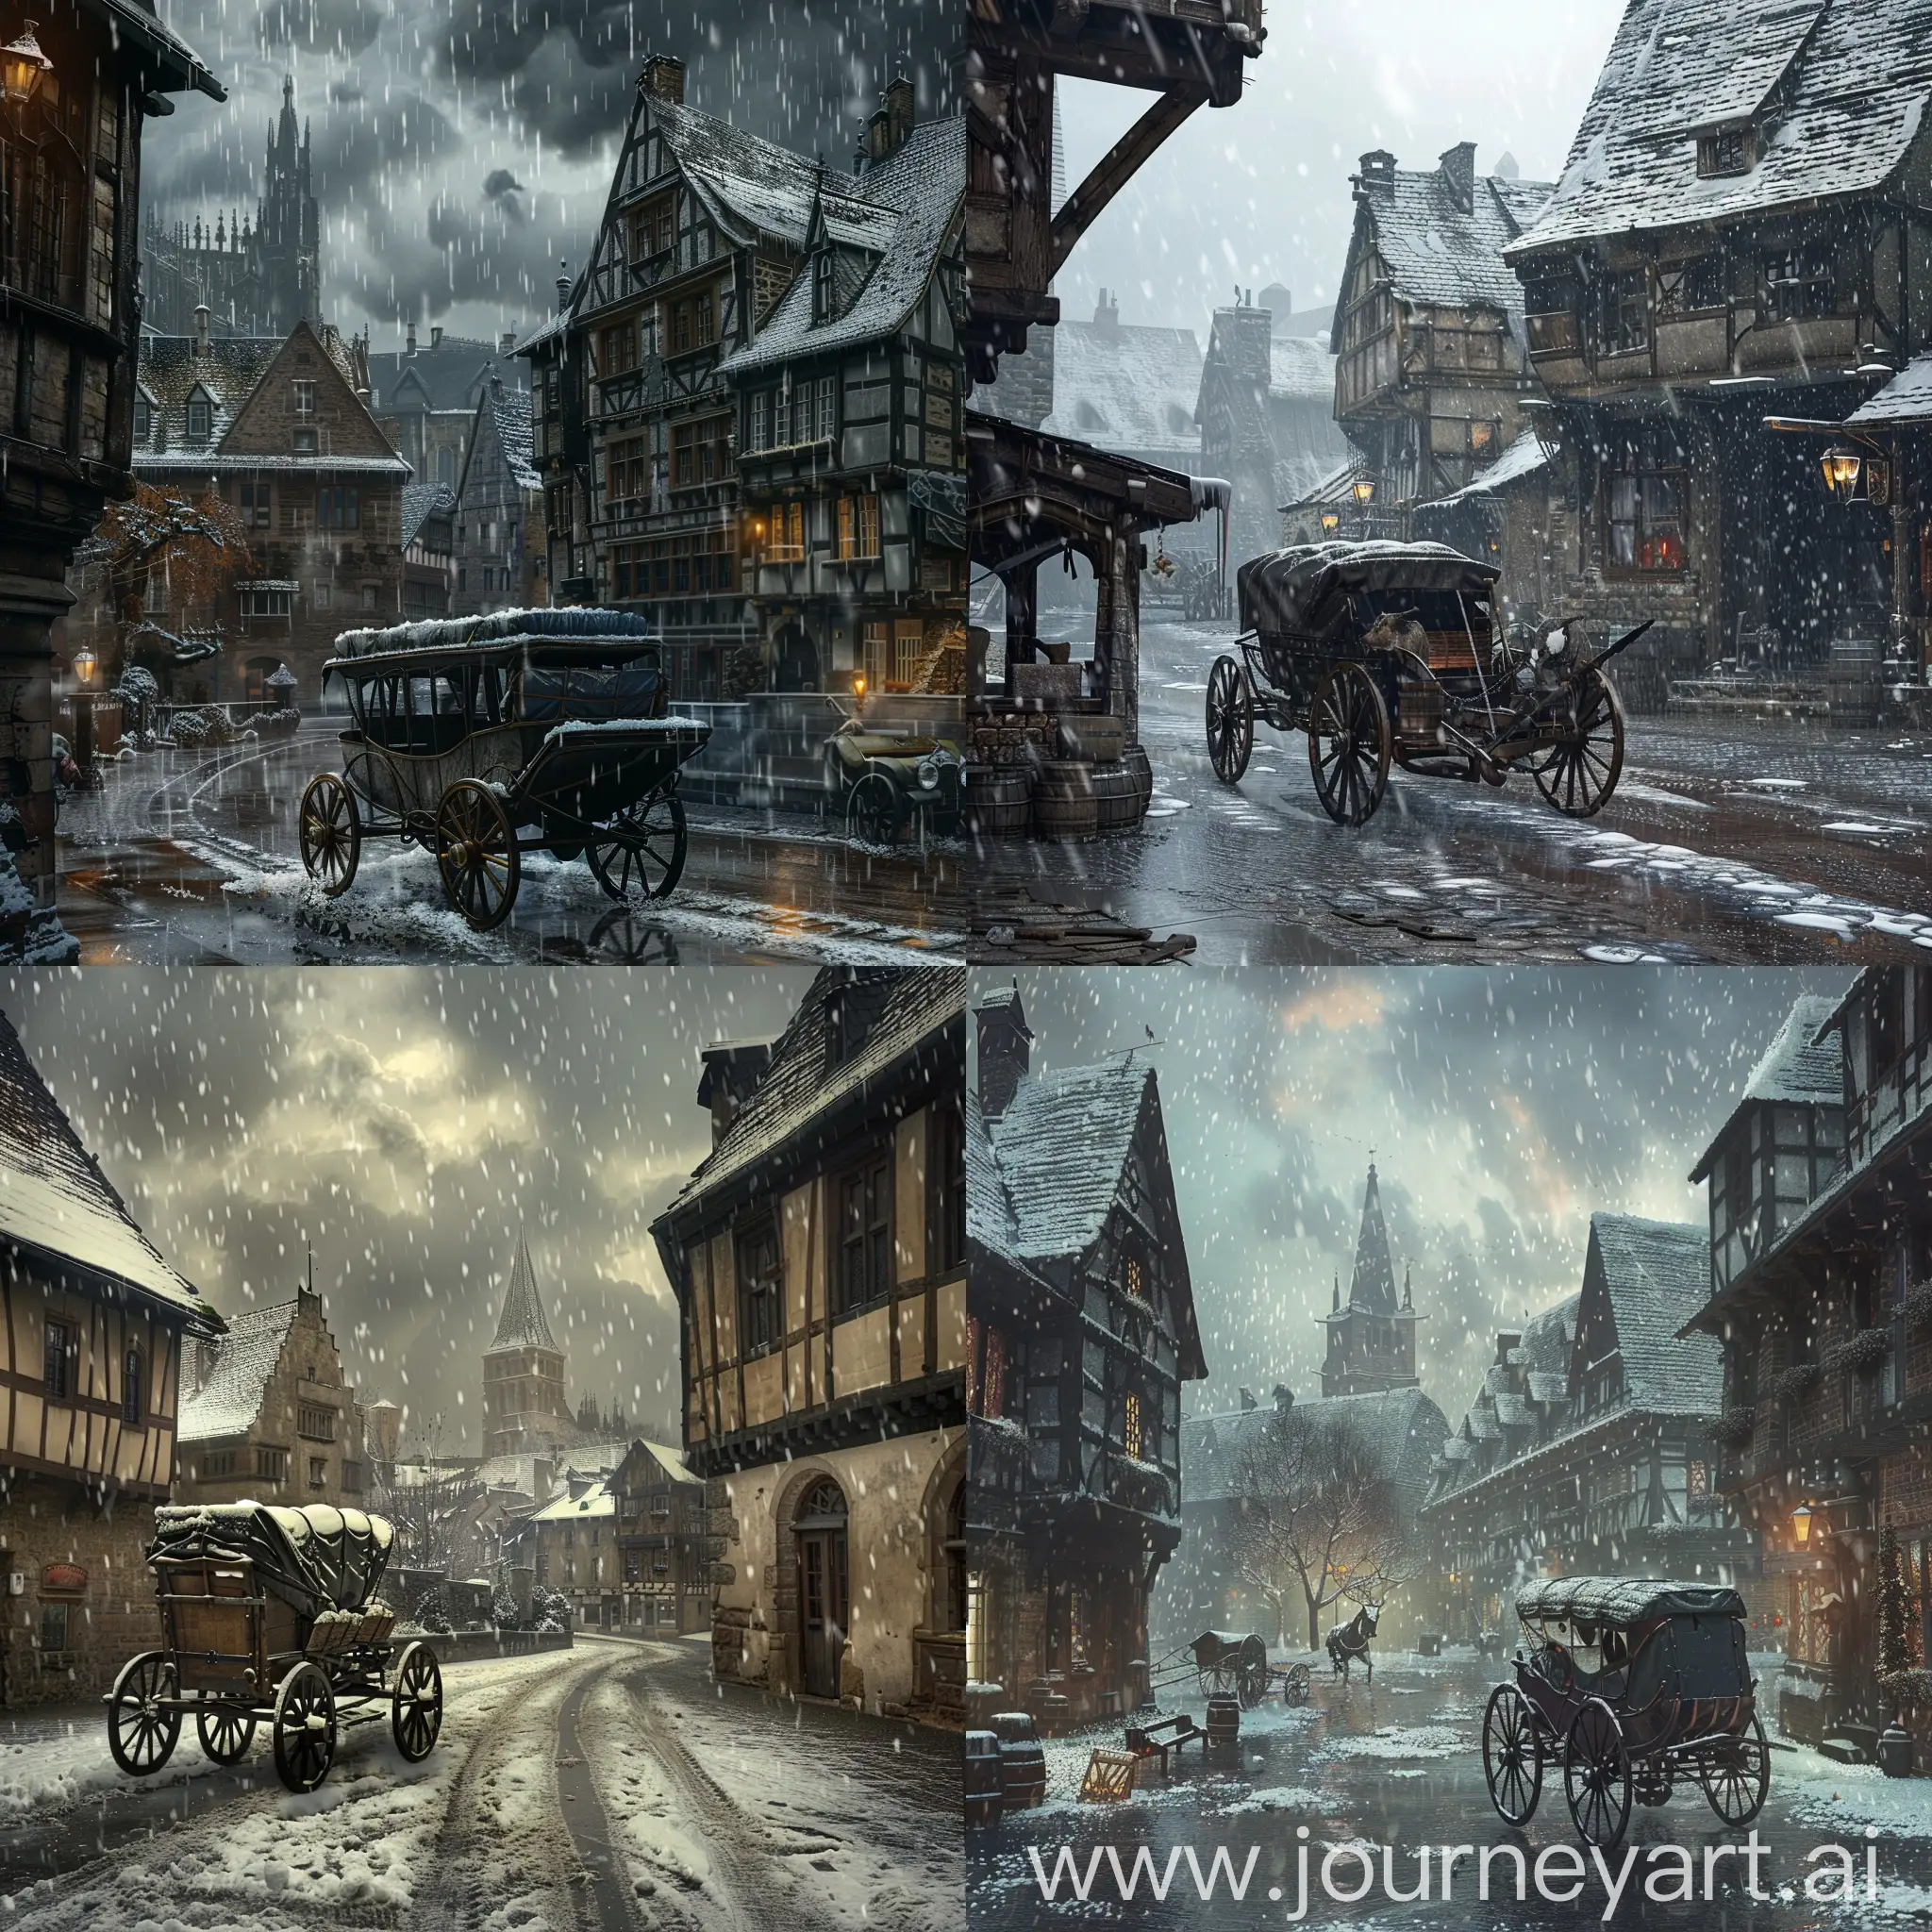 Medieval European background, carriage, snow, town, rain, sadness.